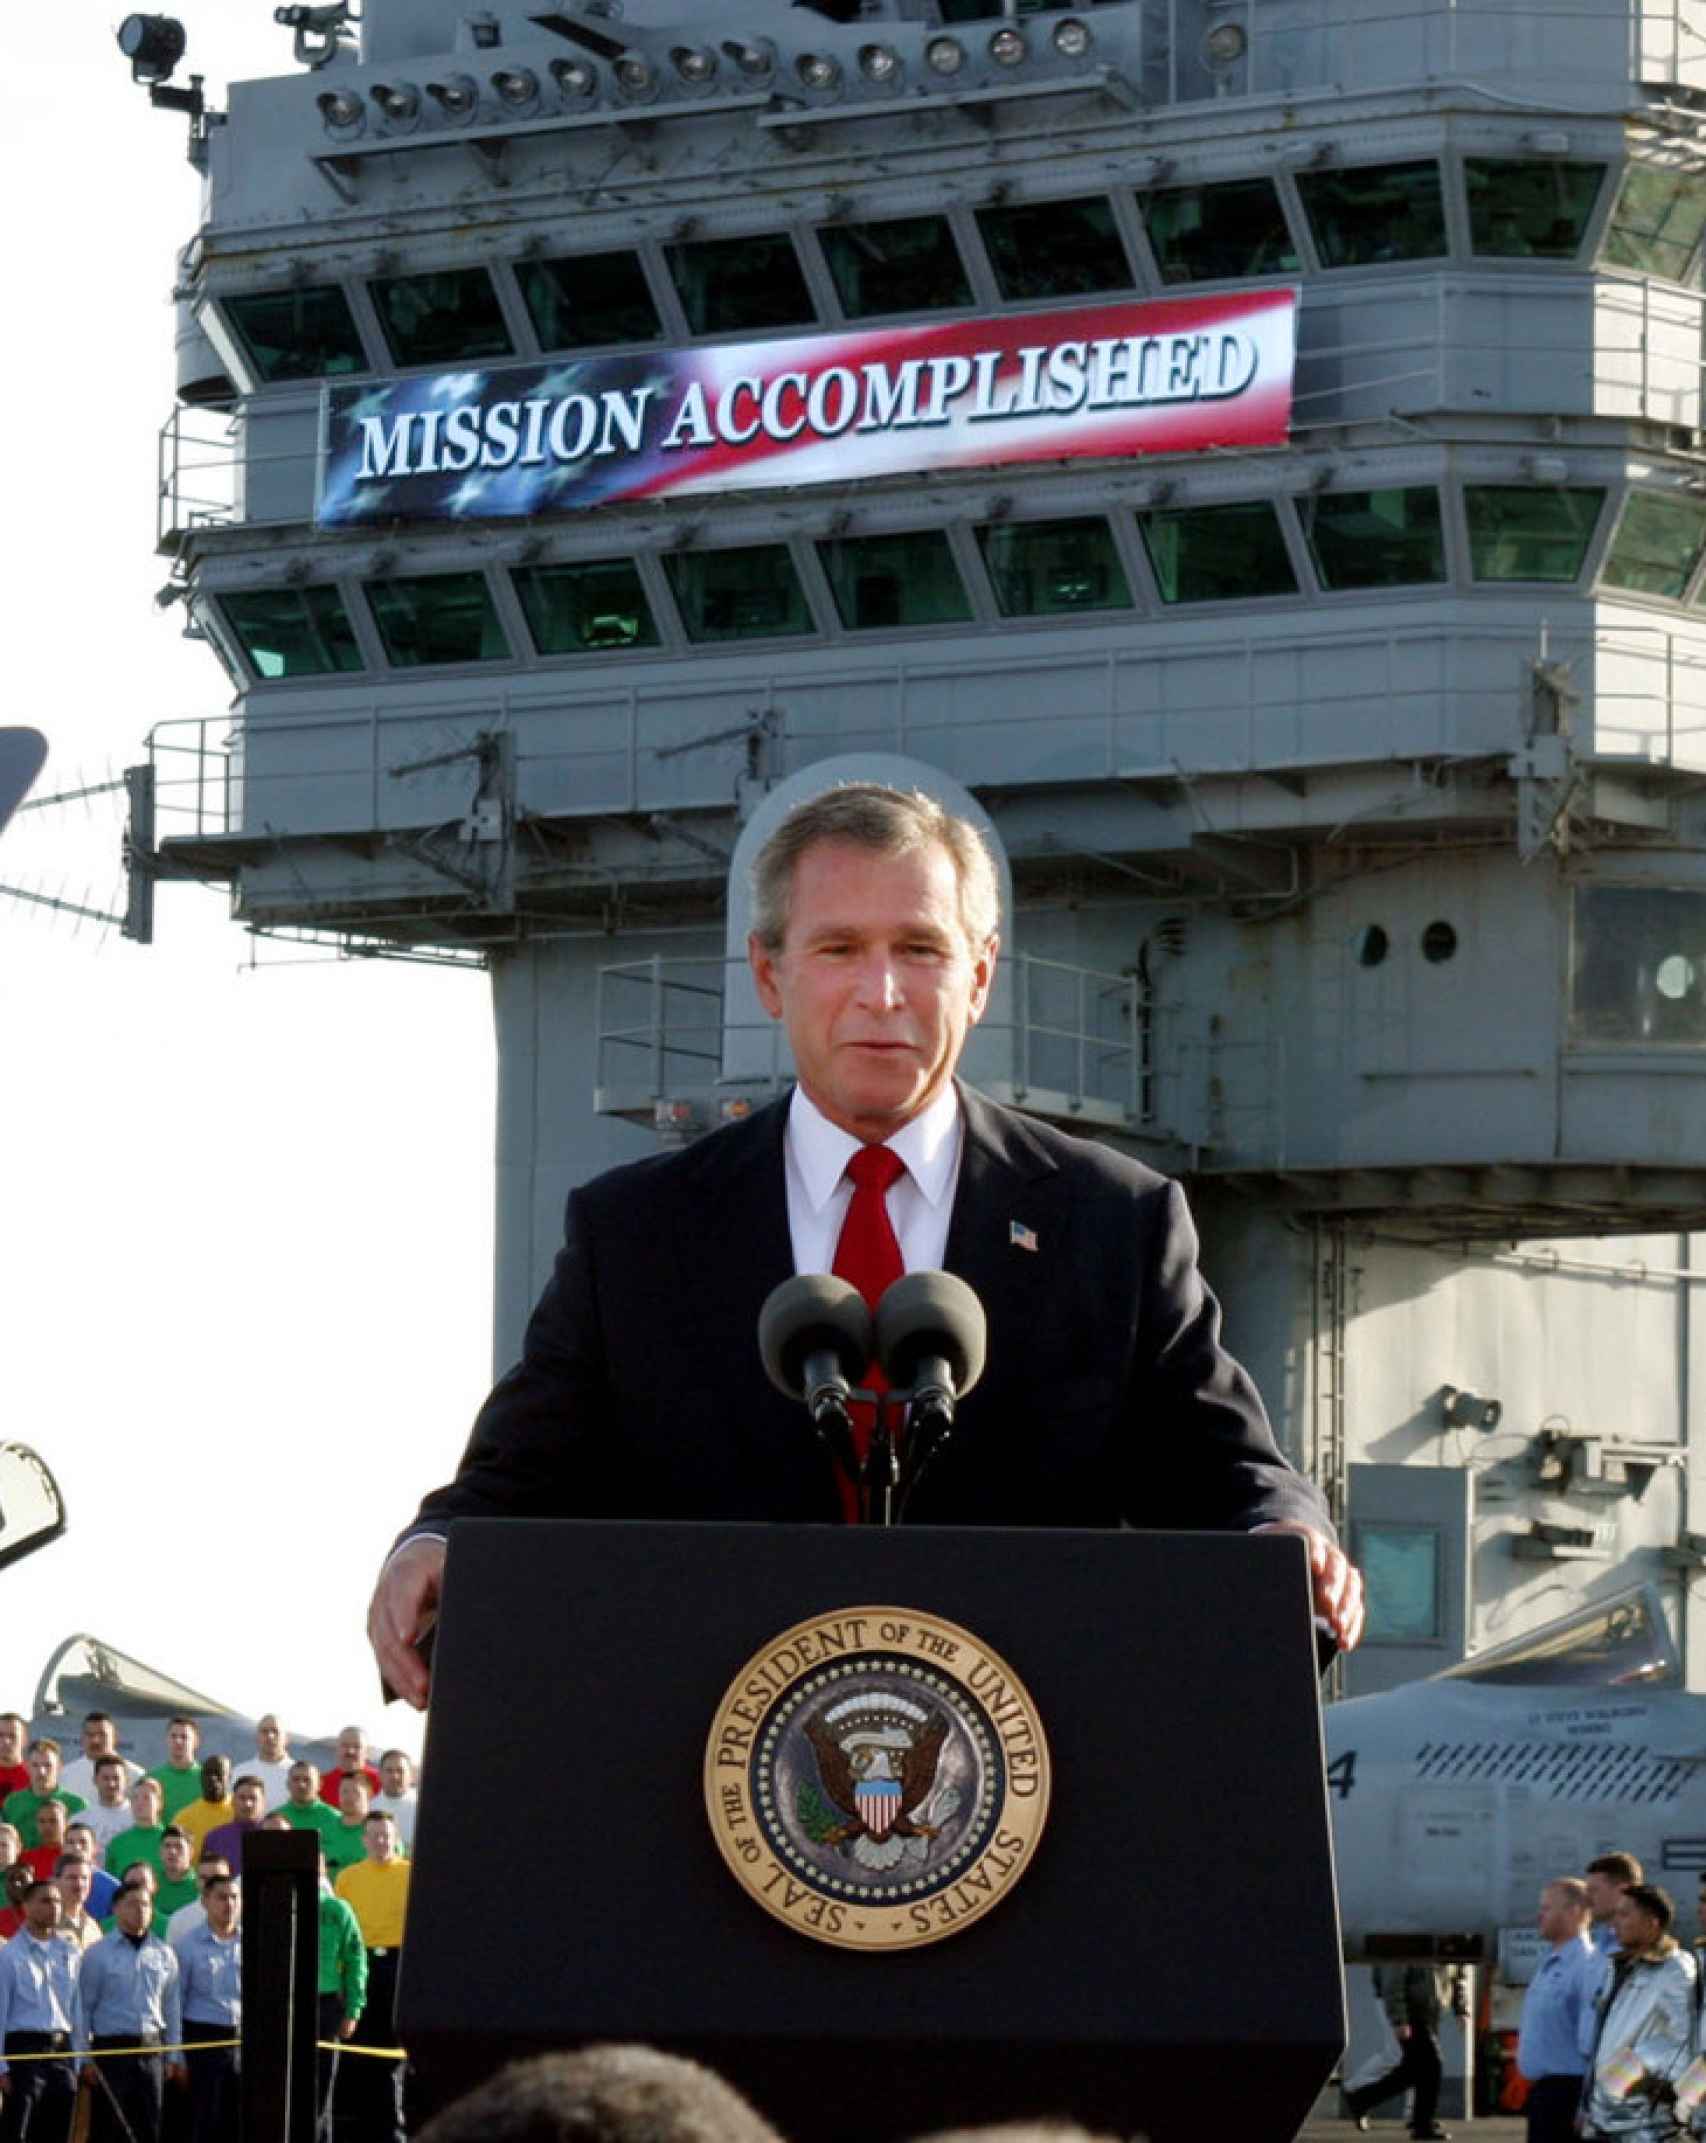 George W. Bush, en el portaaviones USS Abraham Lincoln, anuncia el triunfo de la coalición internacional en la guerra de Irak. Tras él aparece un letrero con las palabras Mission accomplished (Misión cumplida).